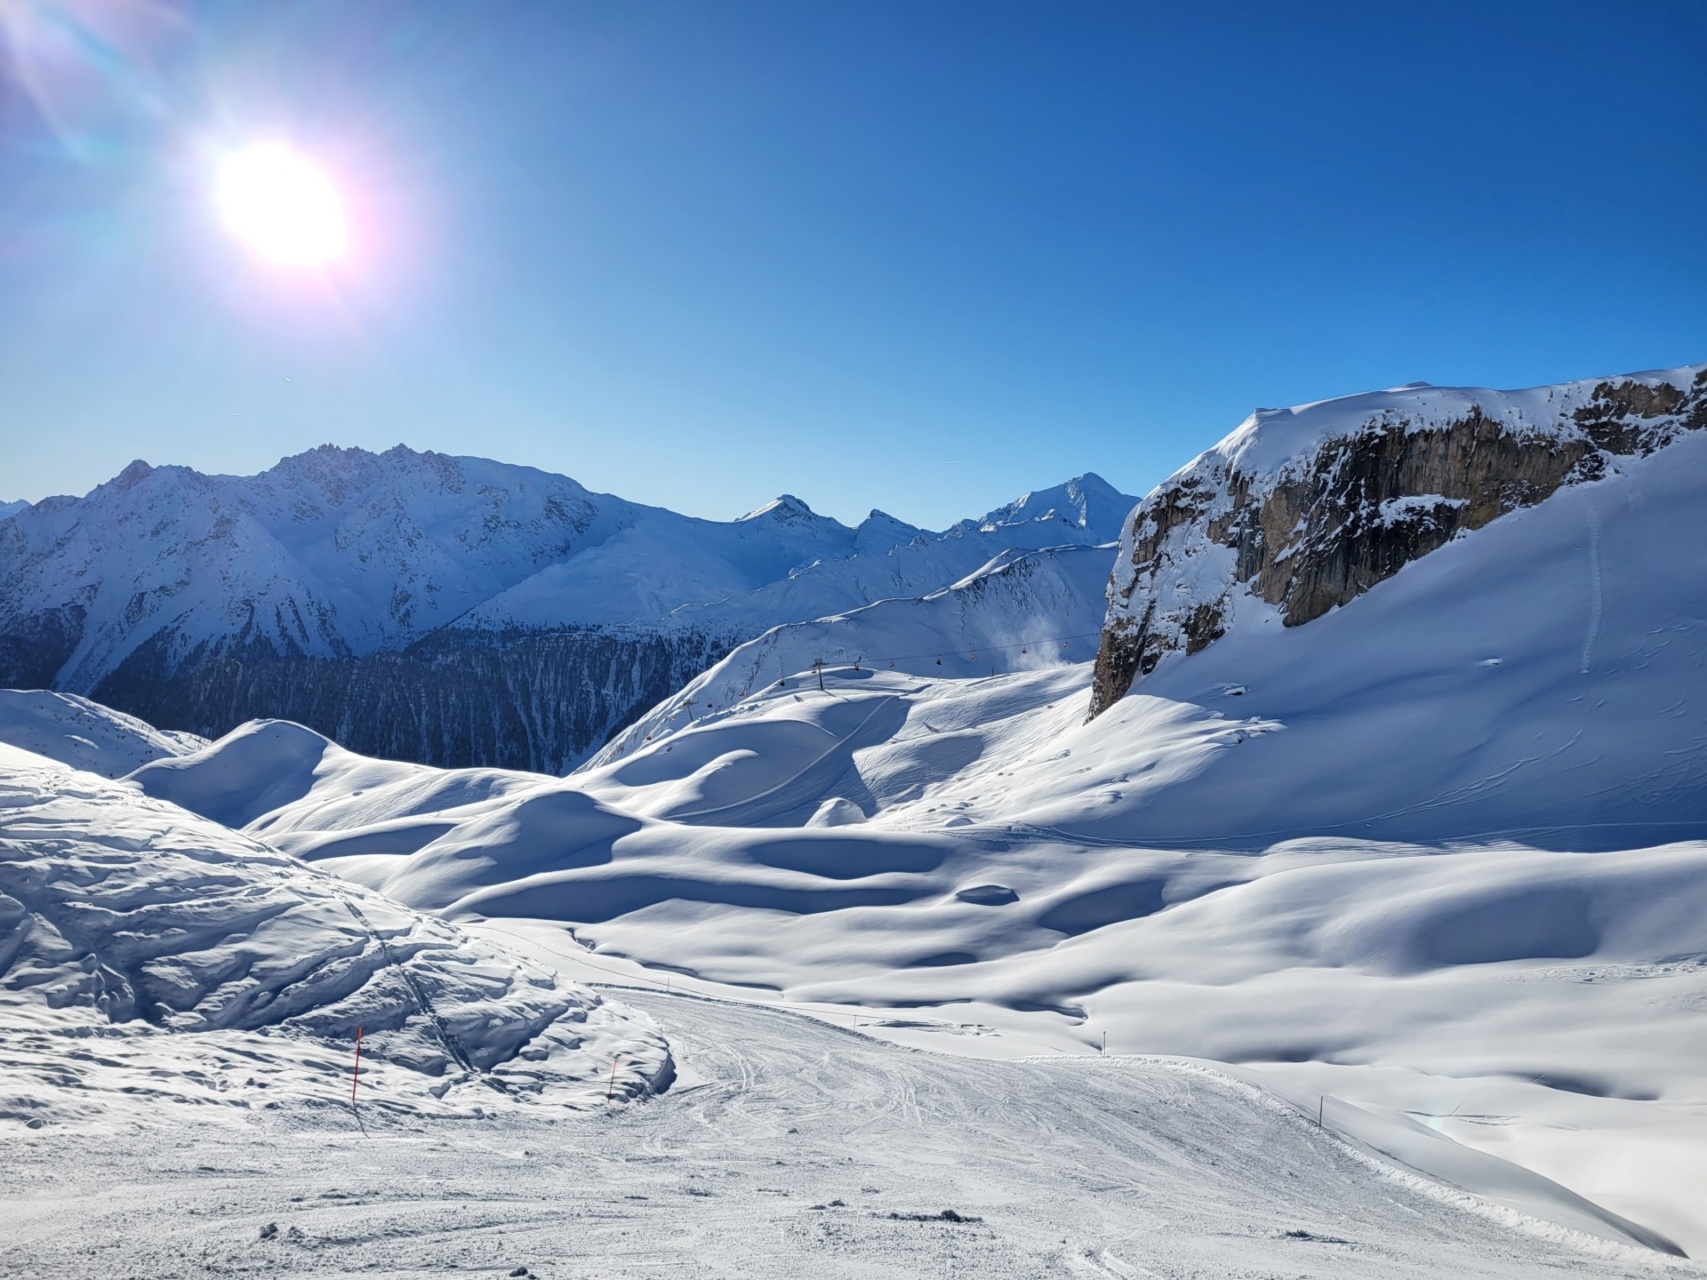 Alpen - Zonnige dagen, richting de kerstvakantie weer sneeuw?